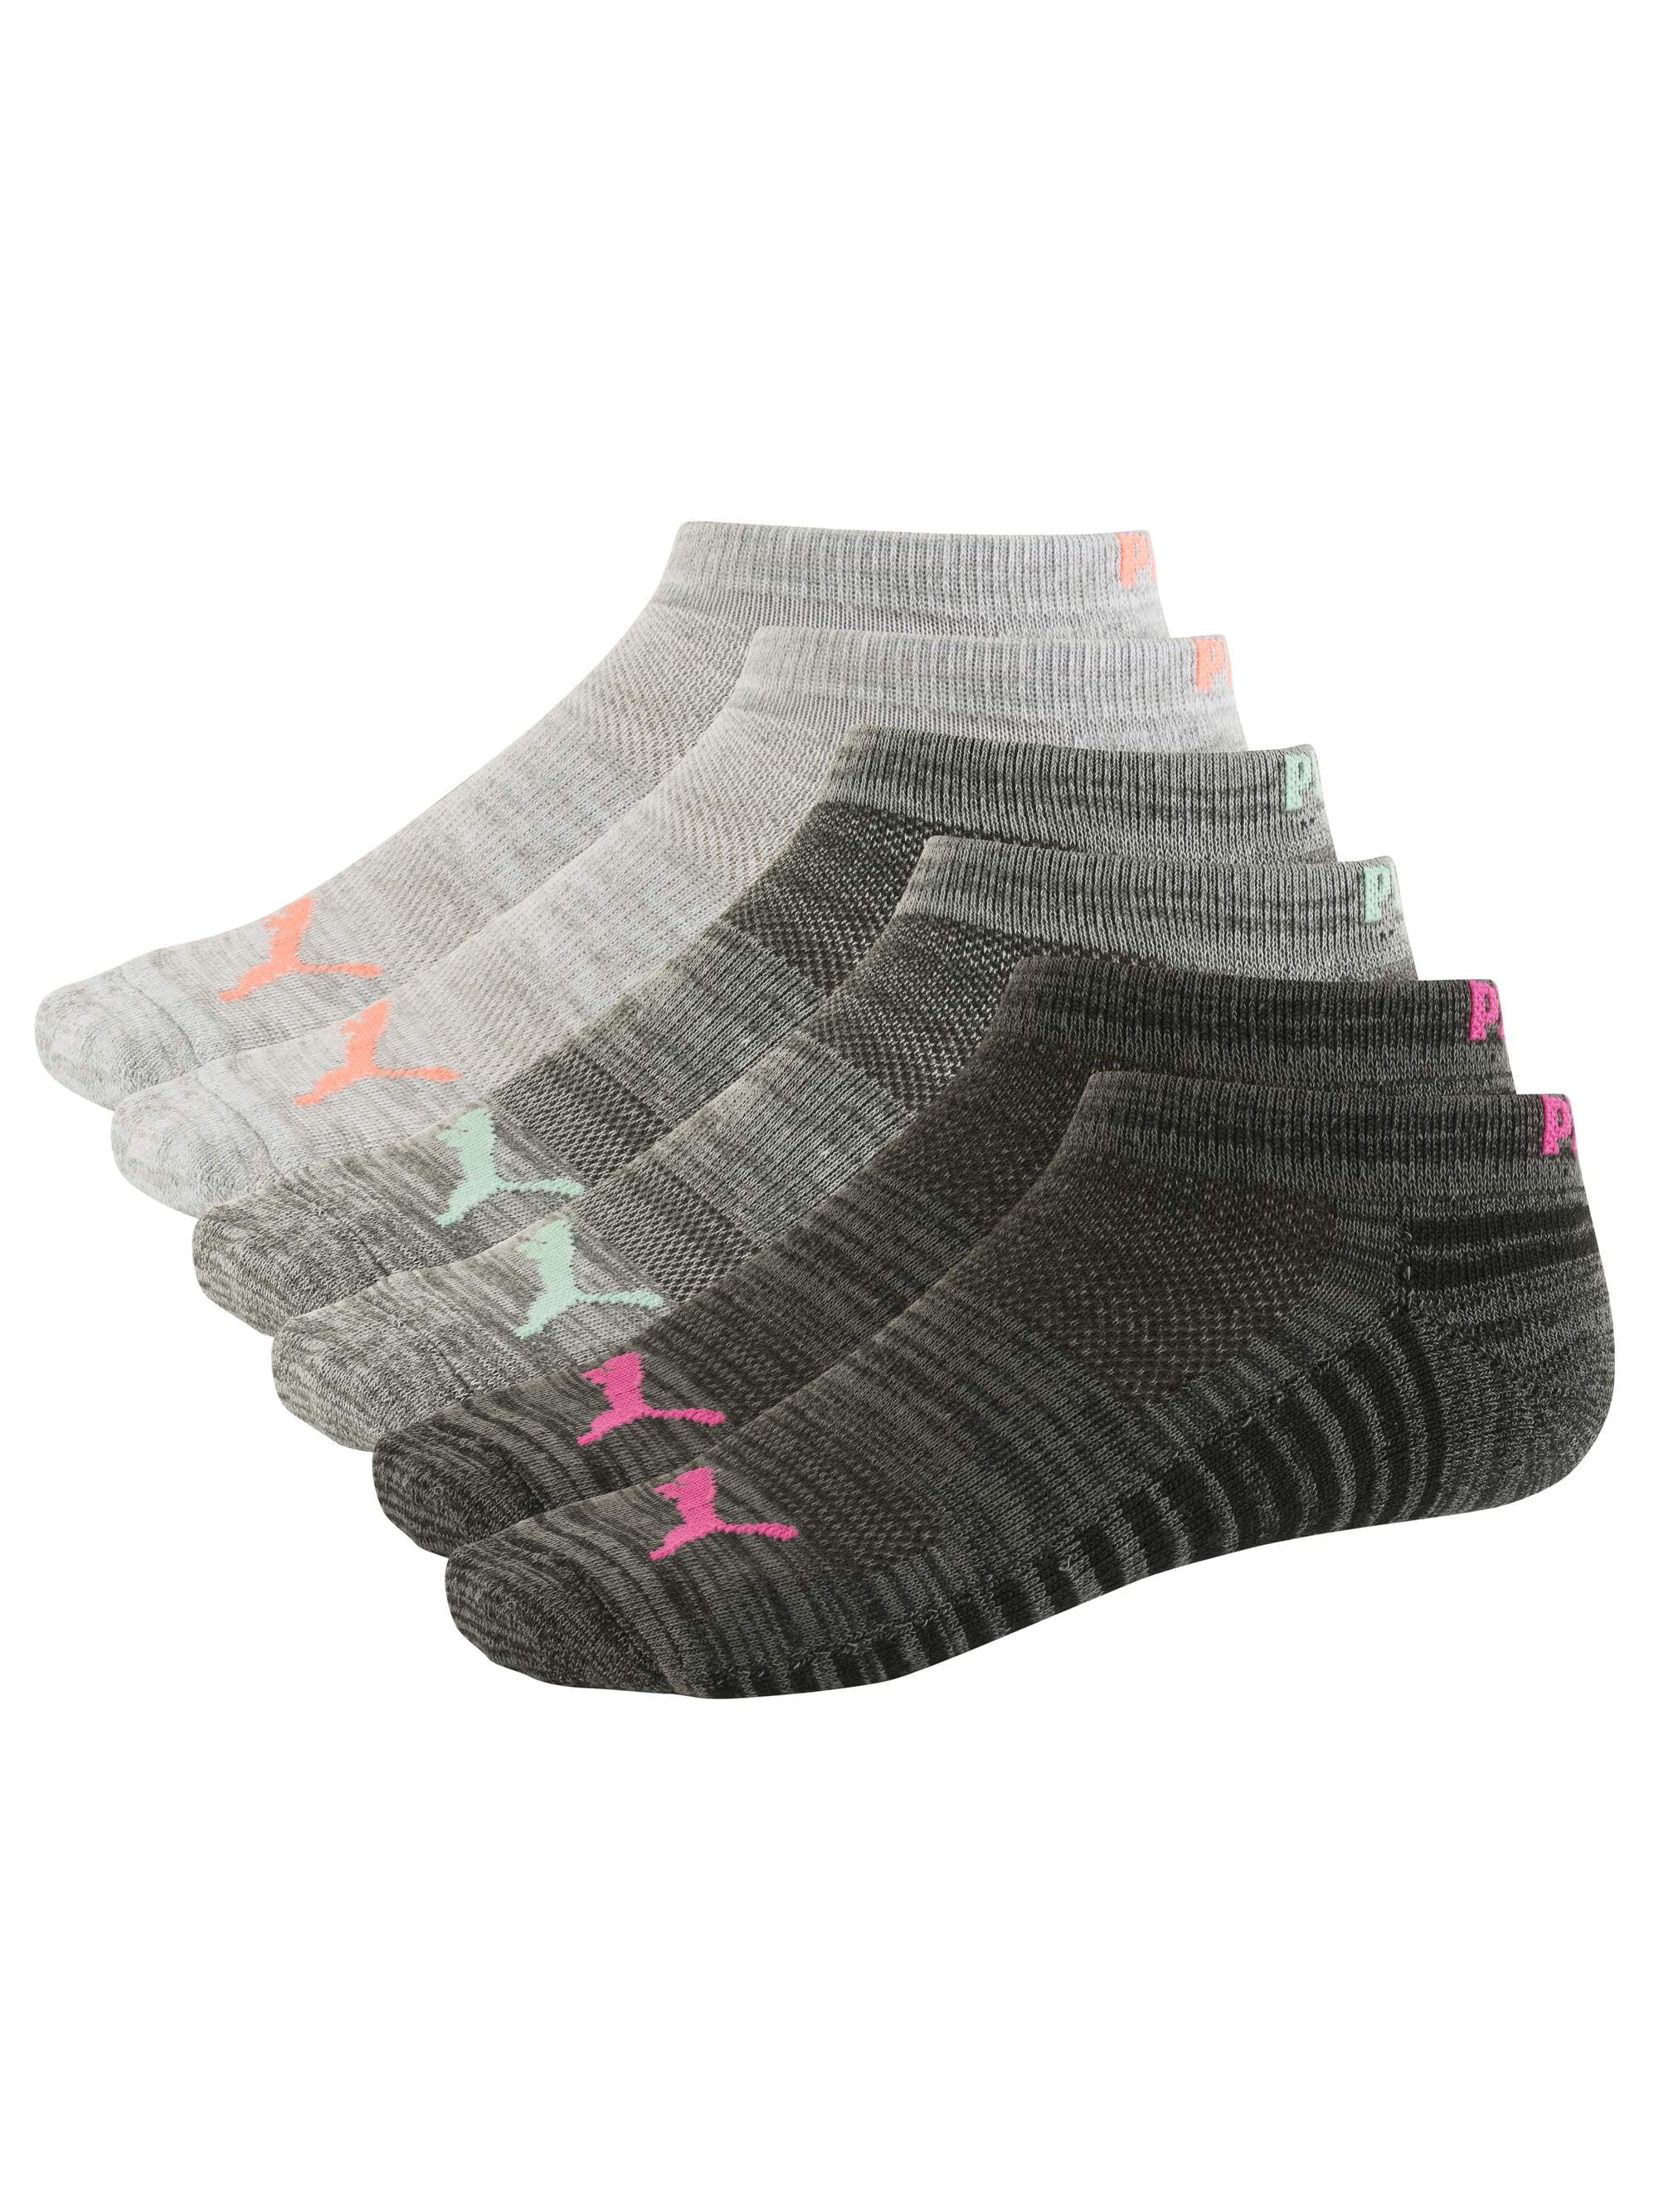 PUMA Women's Low Cut Socks, 6 Pack - Walmart.com